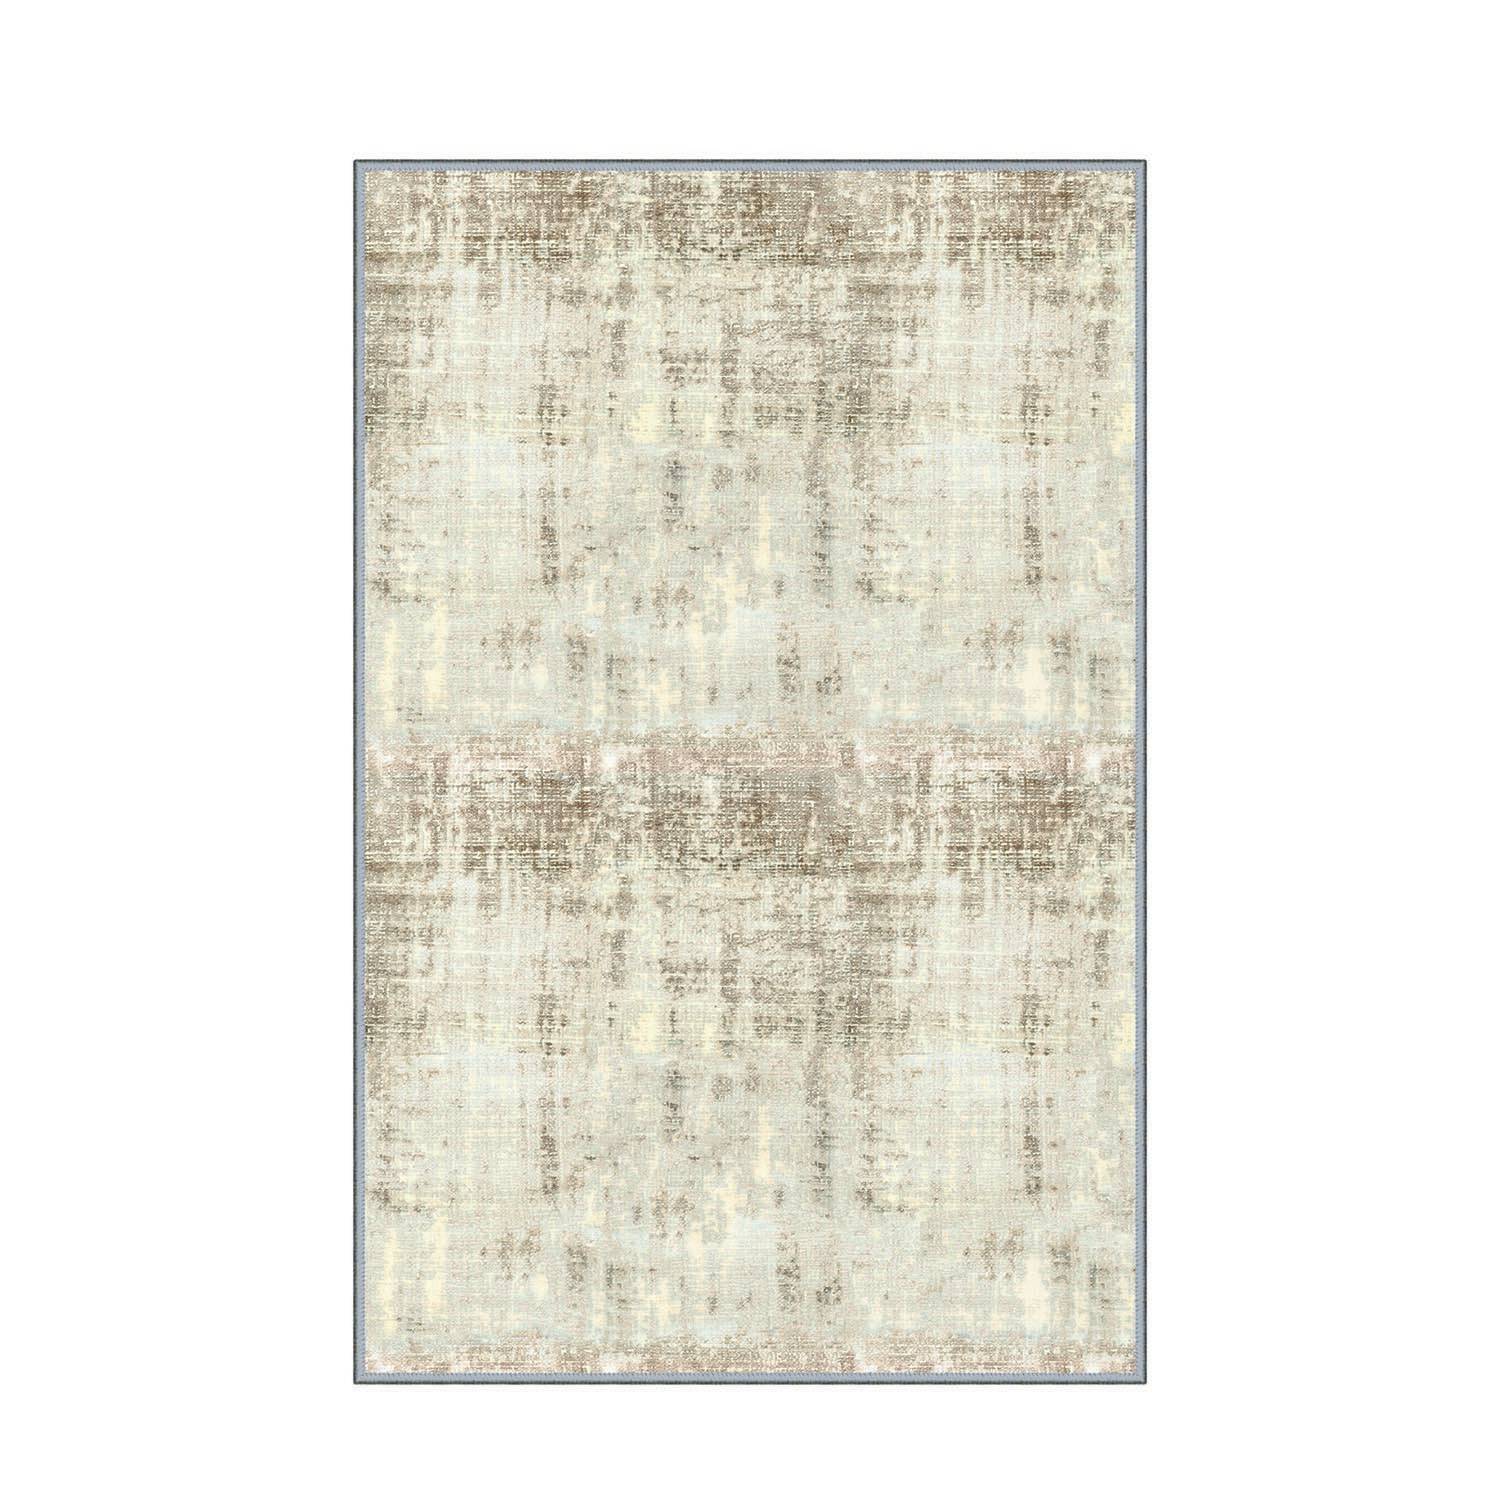 Tapijt Marnis 120x180cm Abstract patroon Beige en bruin